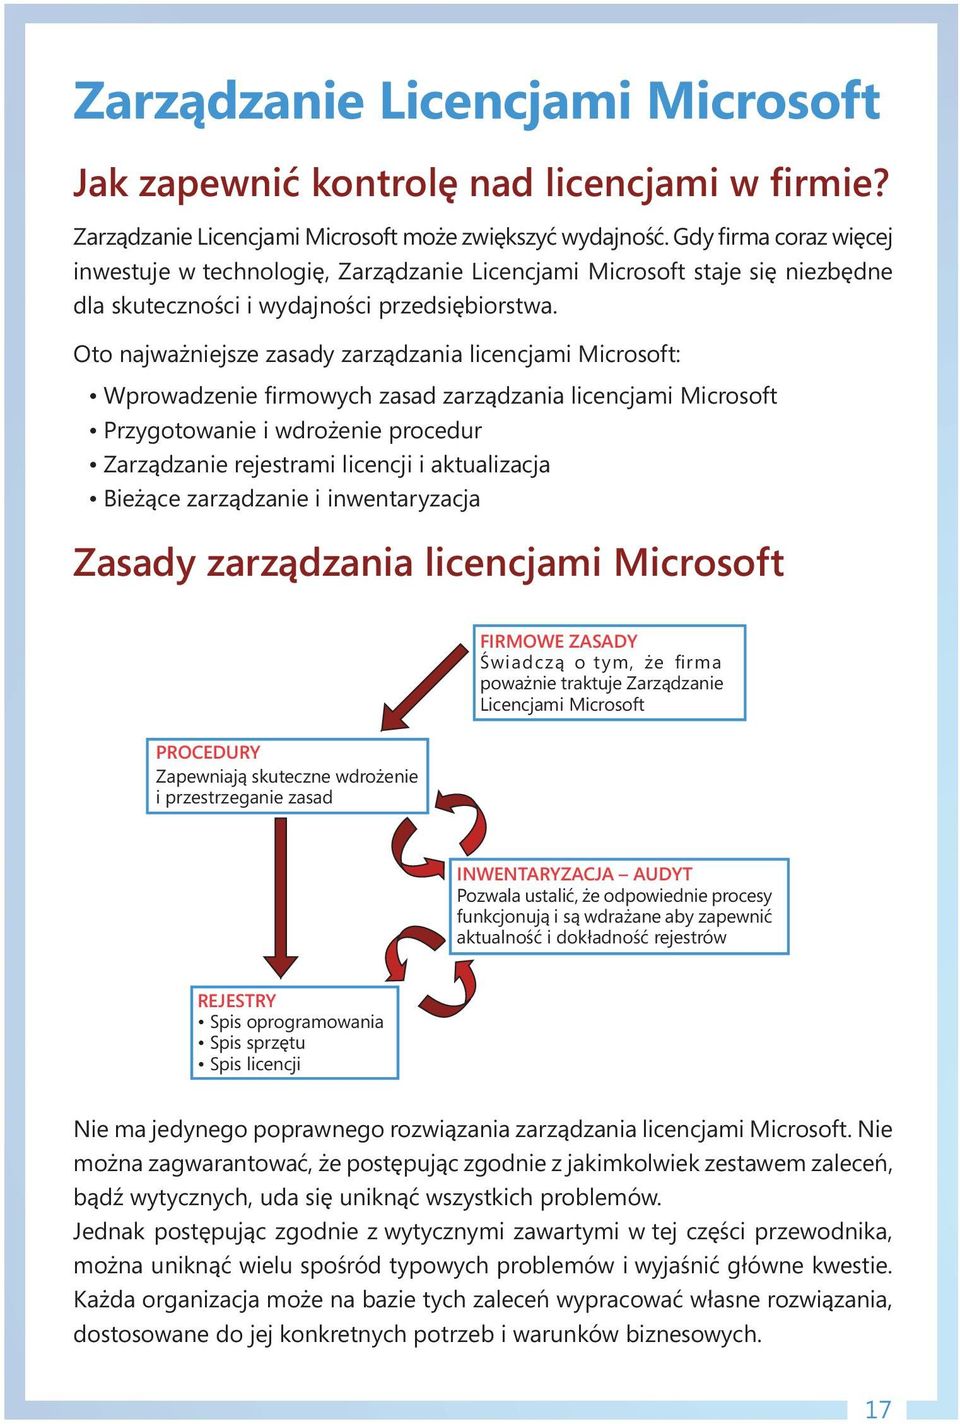 Oto najważniejsze zasady zarządzania licencjami Microsoft: Wprowadzenie firmowych zasad zarządzania licencjami Microsoft Przygotowanie i wdrożenie procedur Zarządzanie rejestrami licencji i